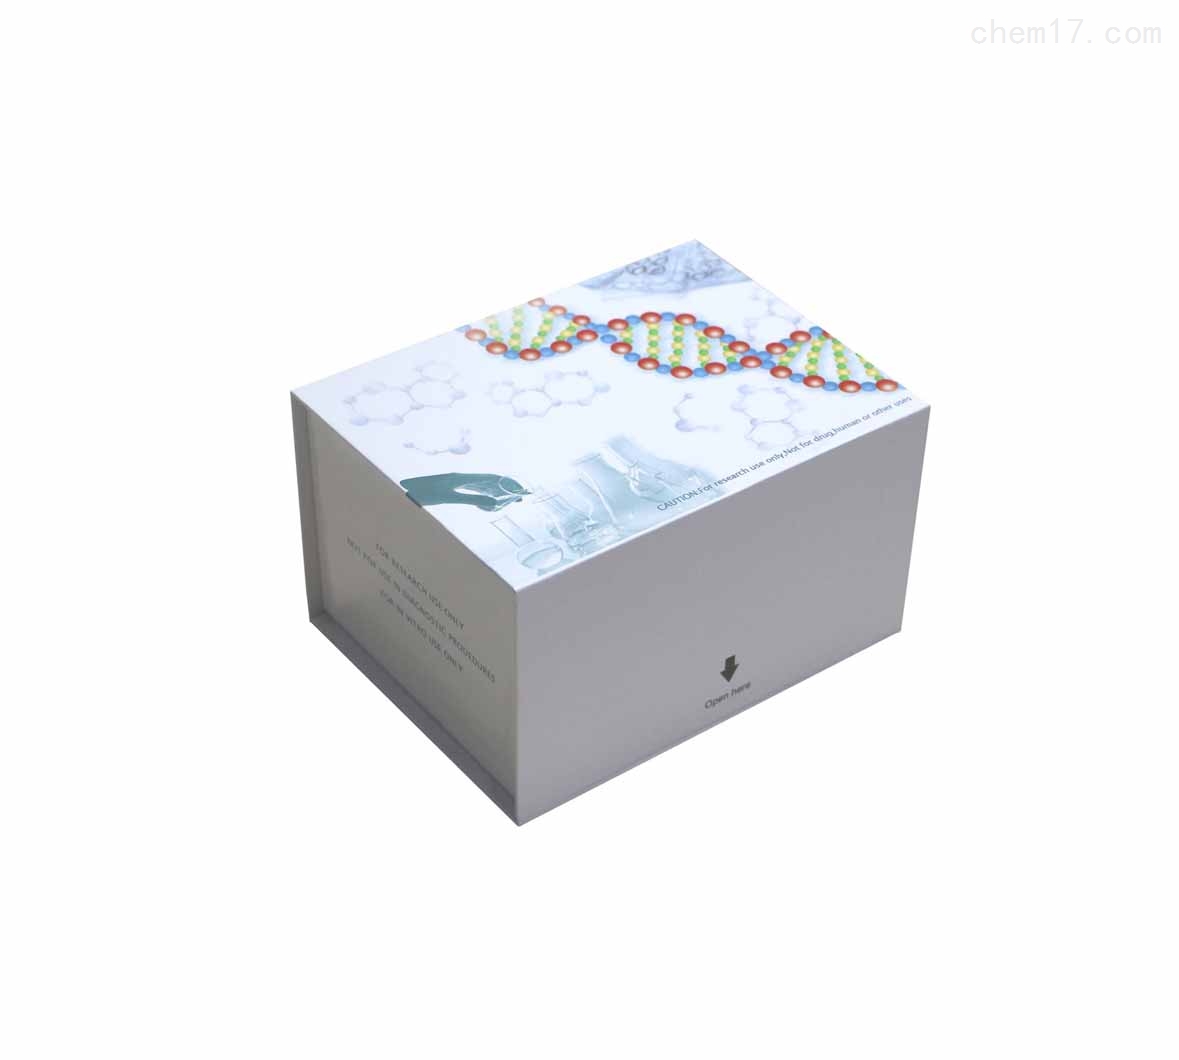 鱼磷酸化腺苷酸活化蛋白激酶(AMPK)ELISA试剂盒